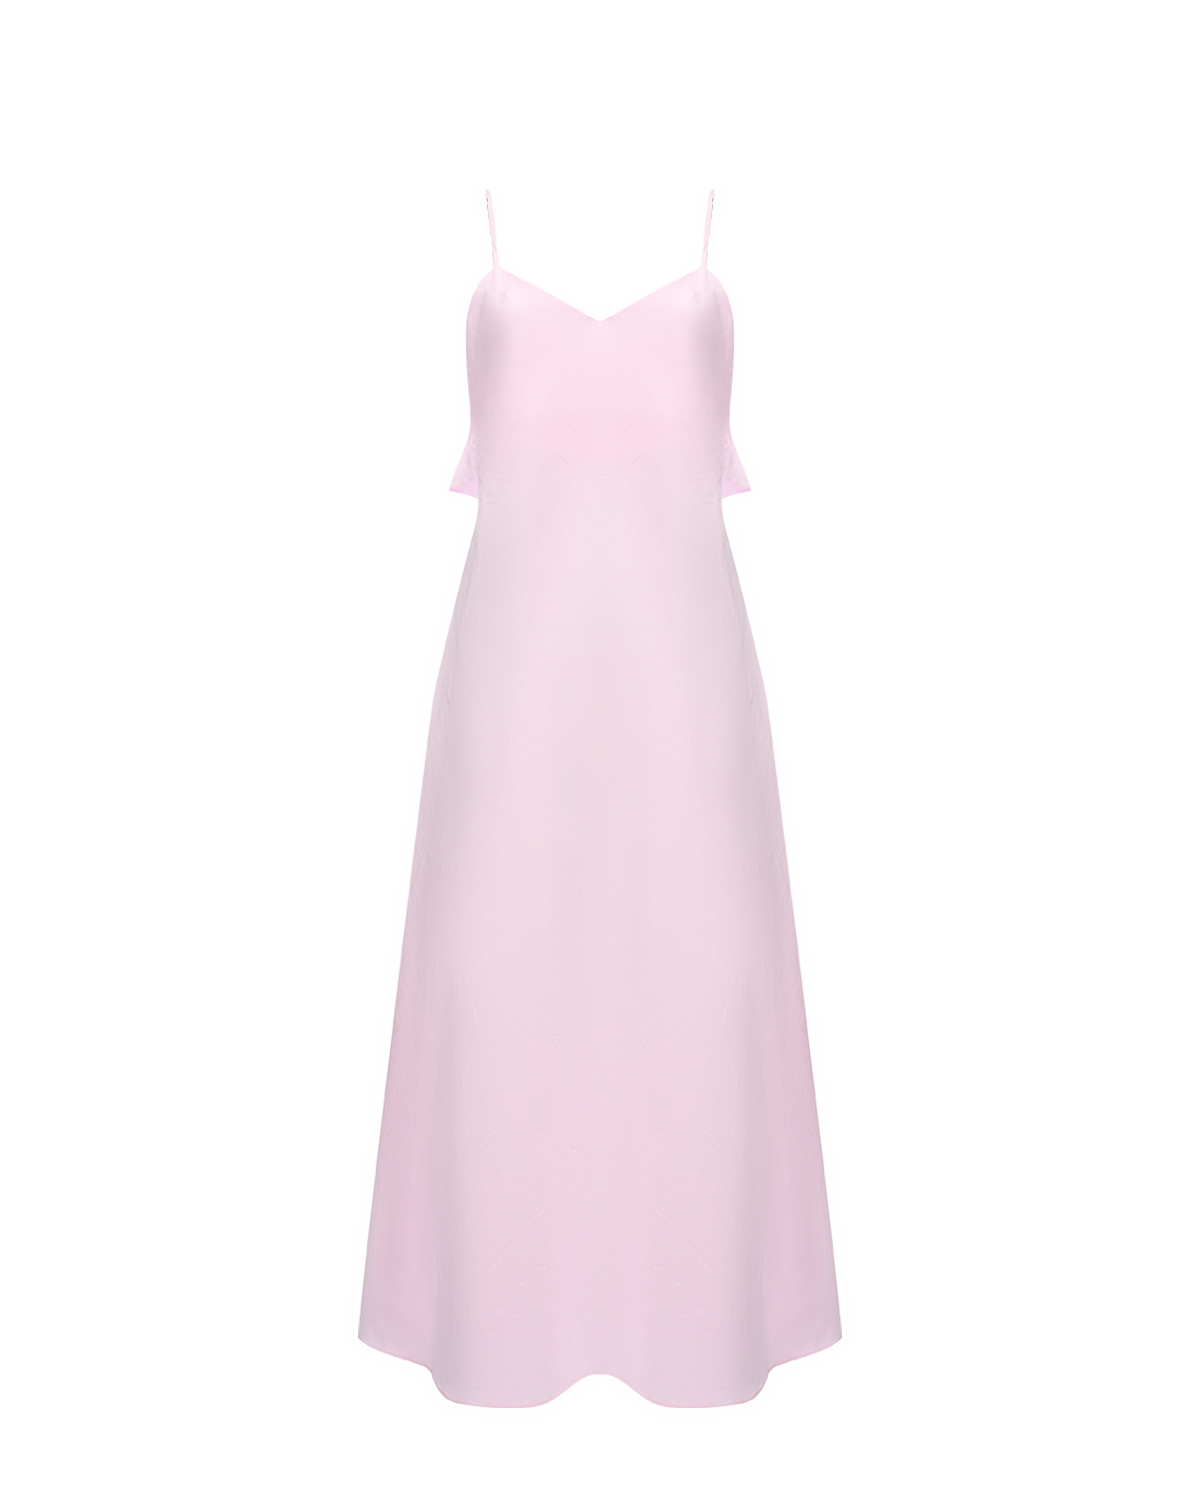 Платье с оборками на спине Dan Maralex, размер 42, цвет розовый - фото 1